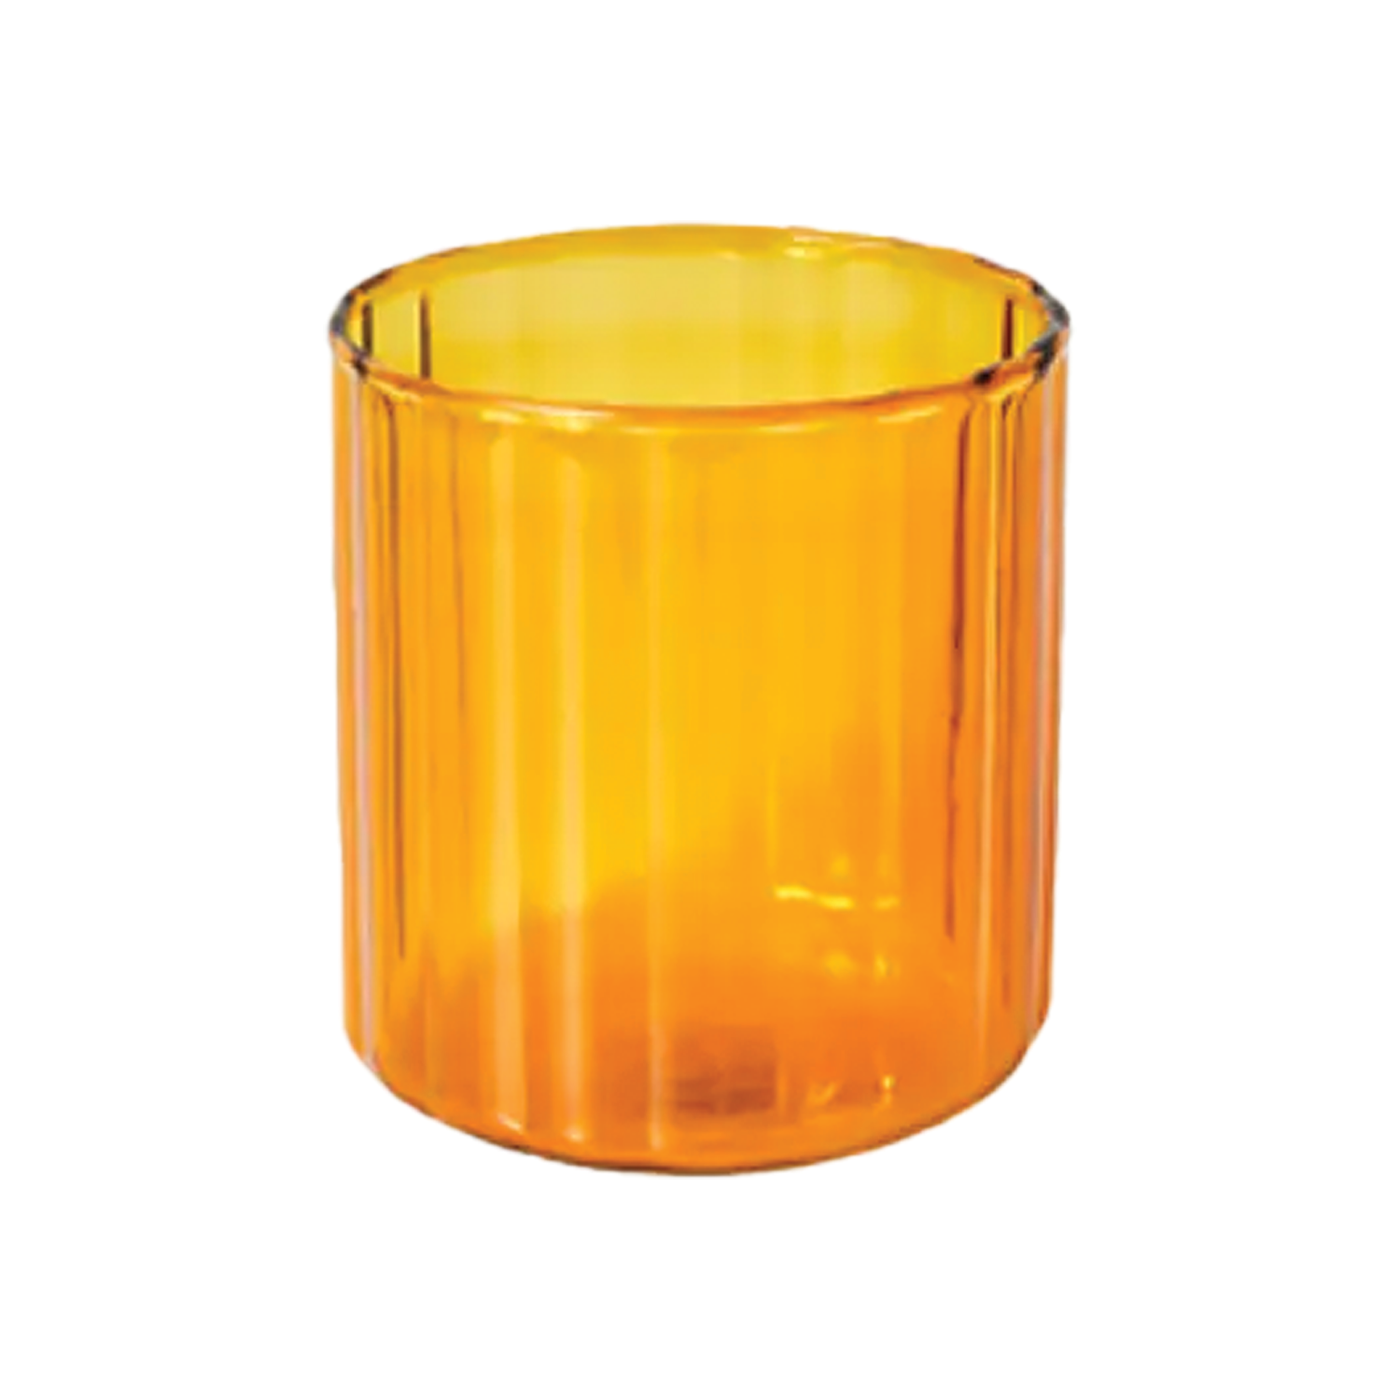 Colored Small Glass Cup - Orange